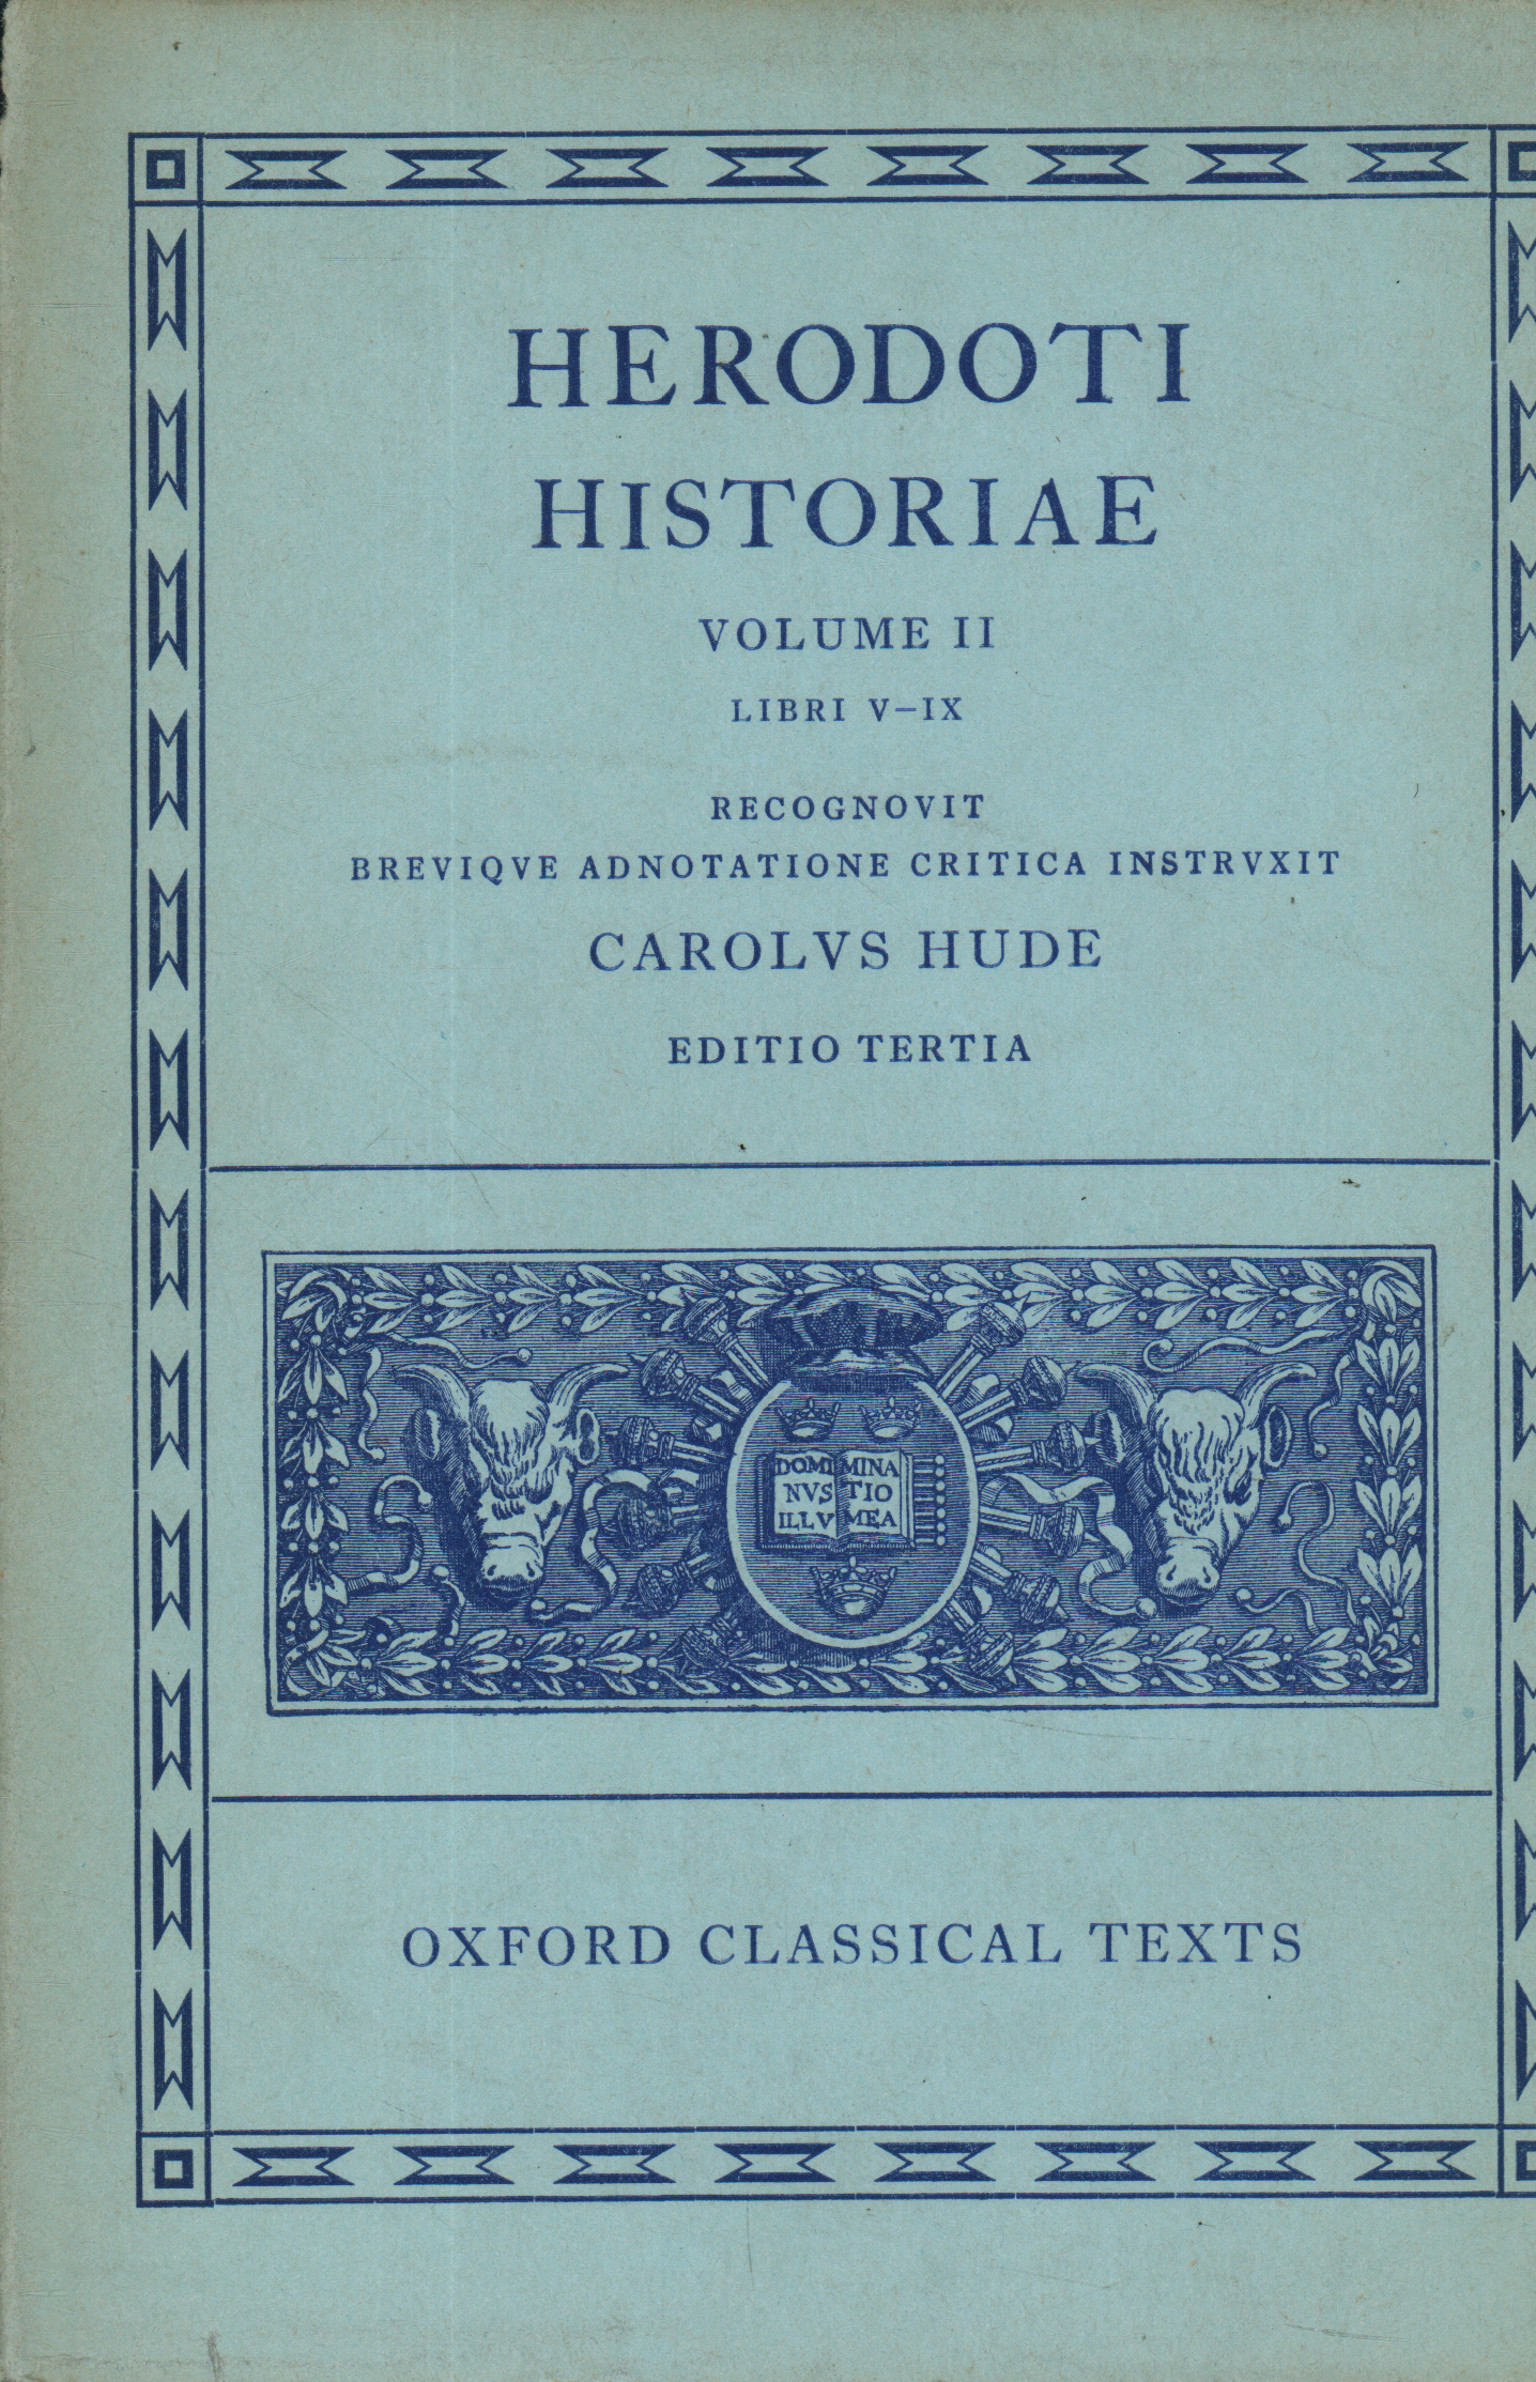 Historiae. Volume II. Libri V-IX, Herodoti